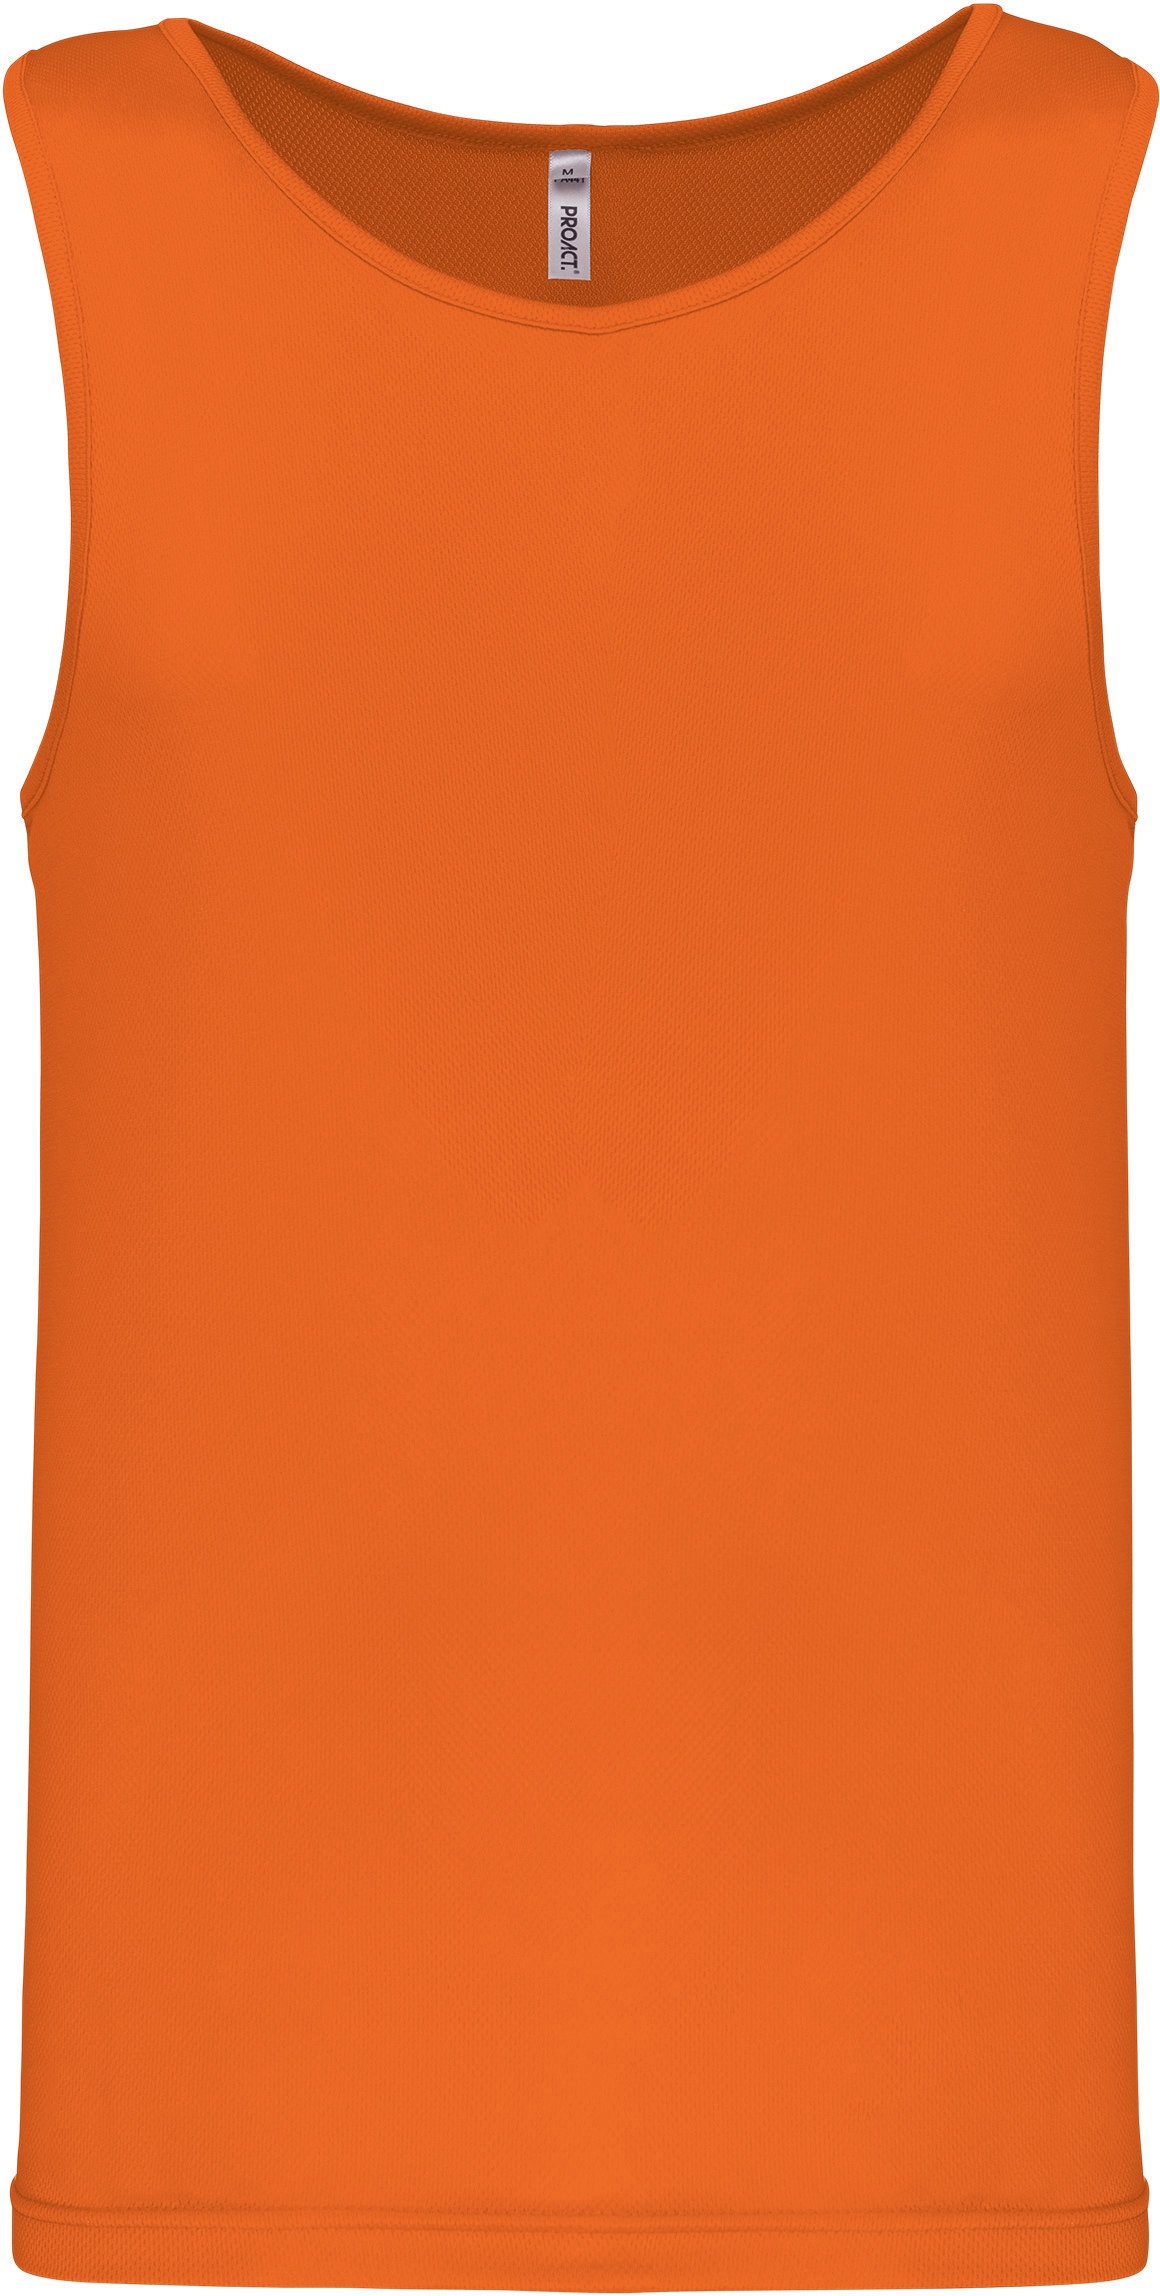 Pánské funkční tílko Barva: neon orange, Velikost: L